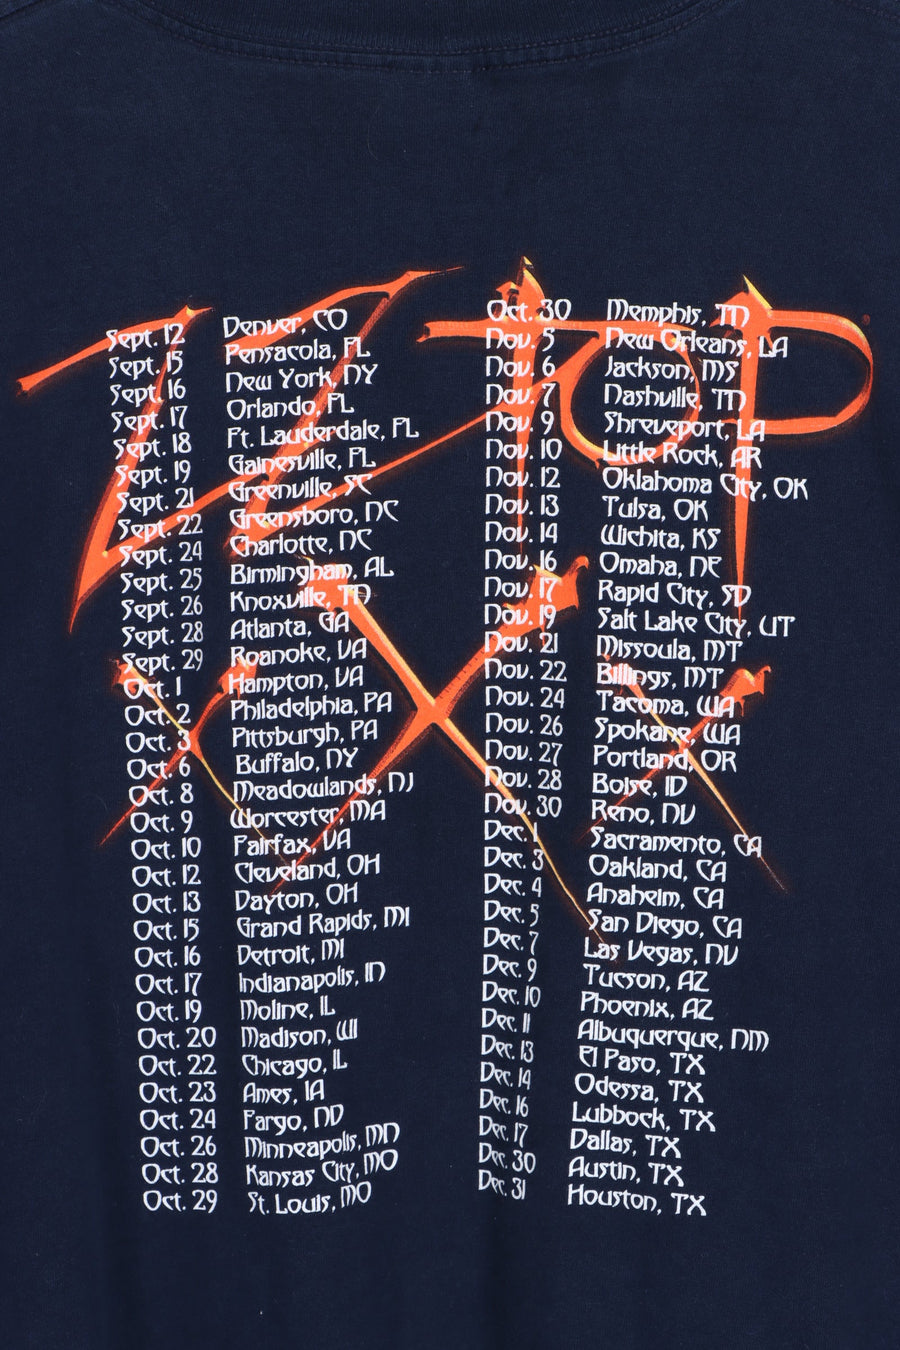 ZZ Top XXX Tour Front Back T-Shirt (L)